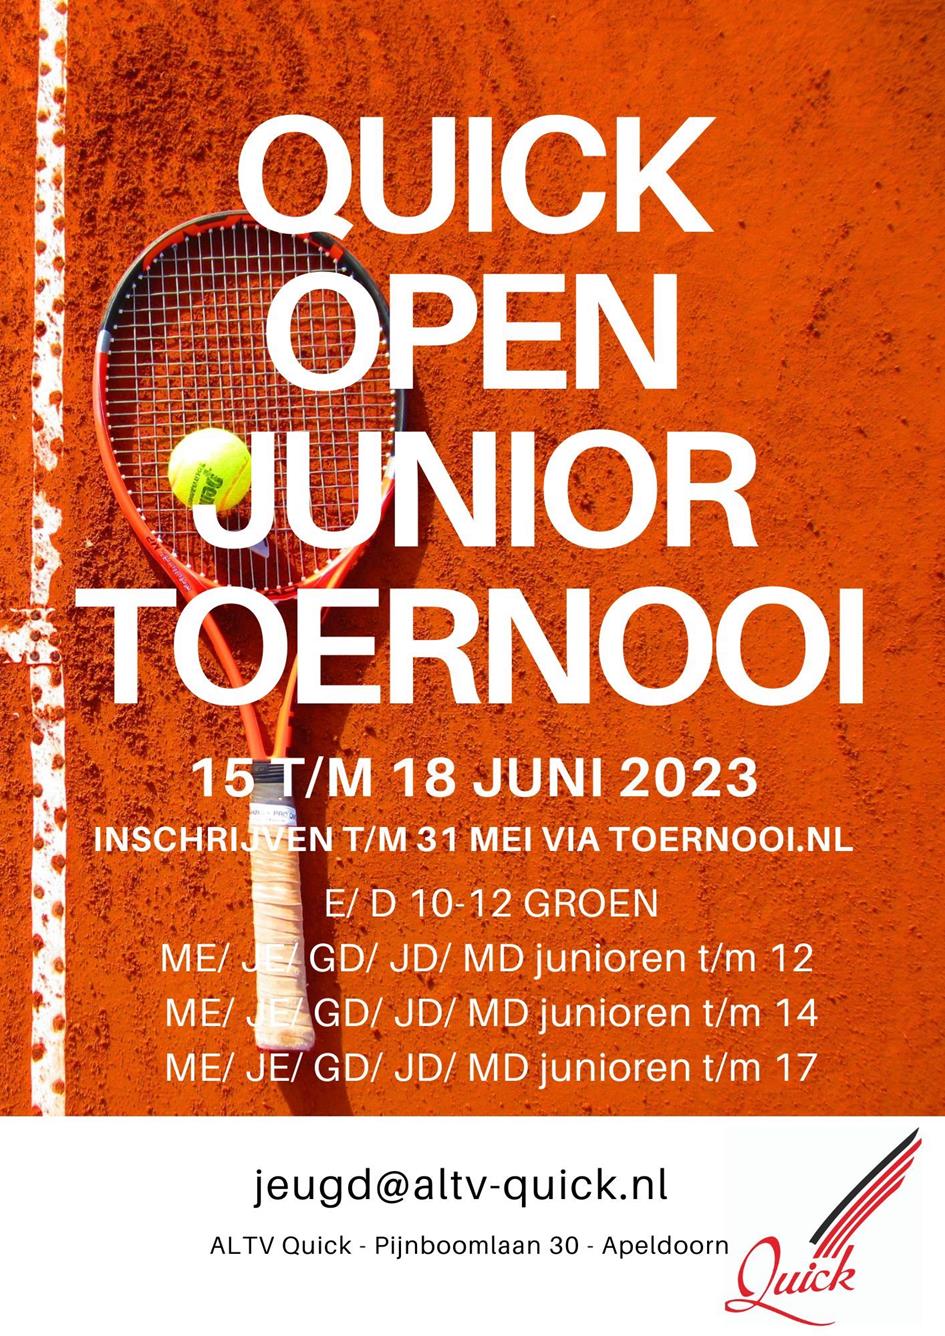 QUICK open junior toernooi flyer.jpeg